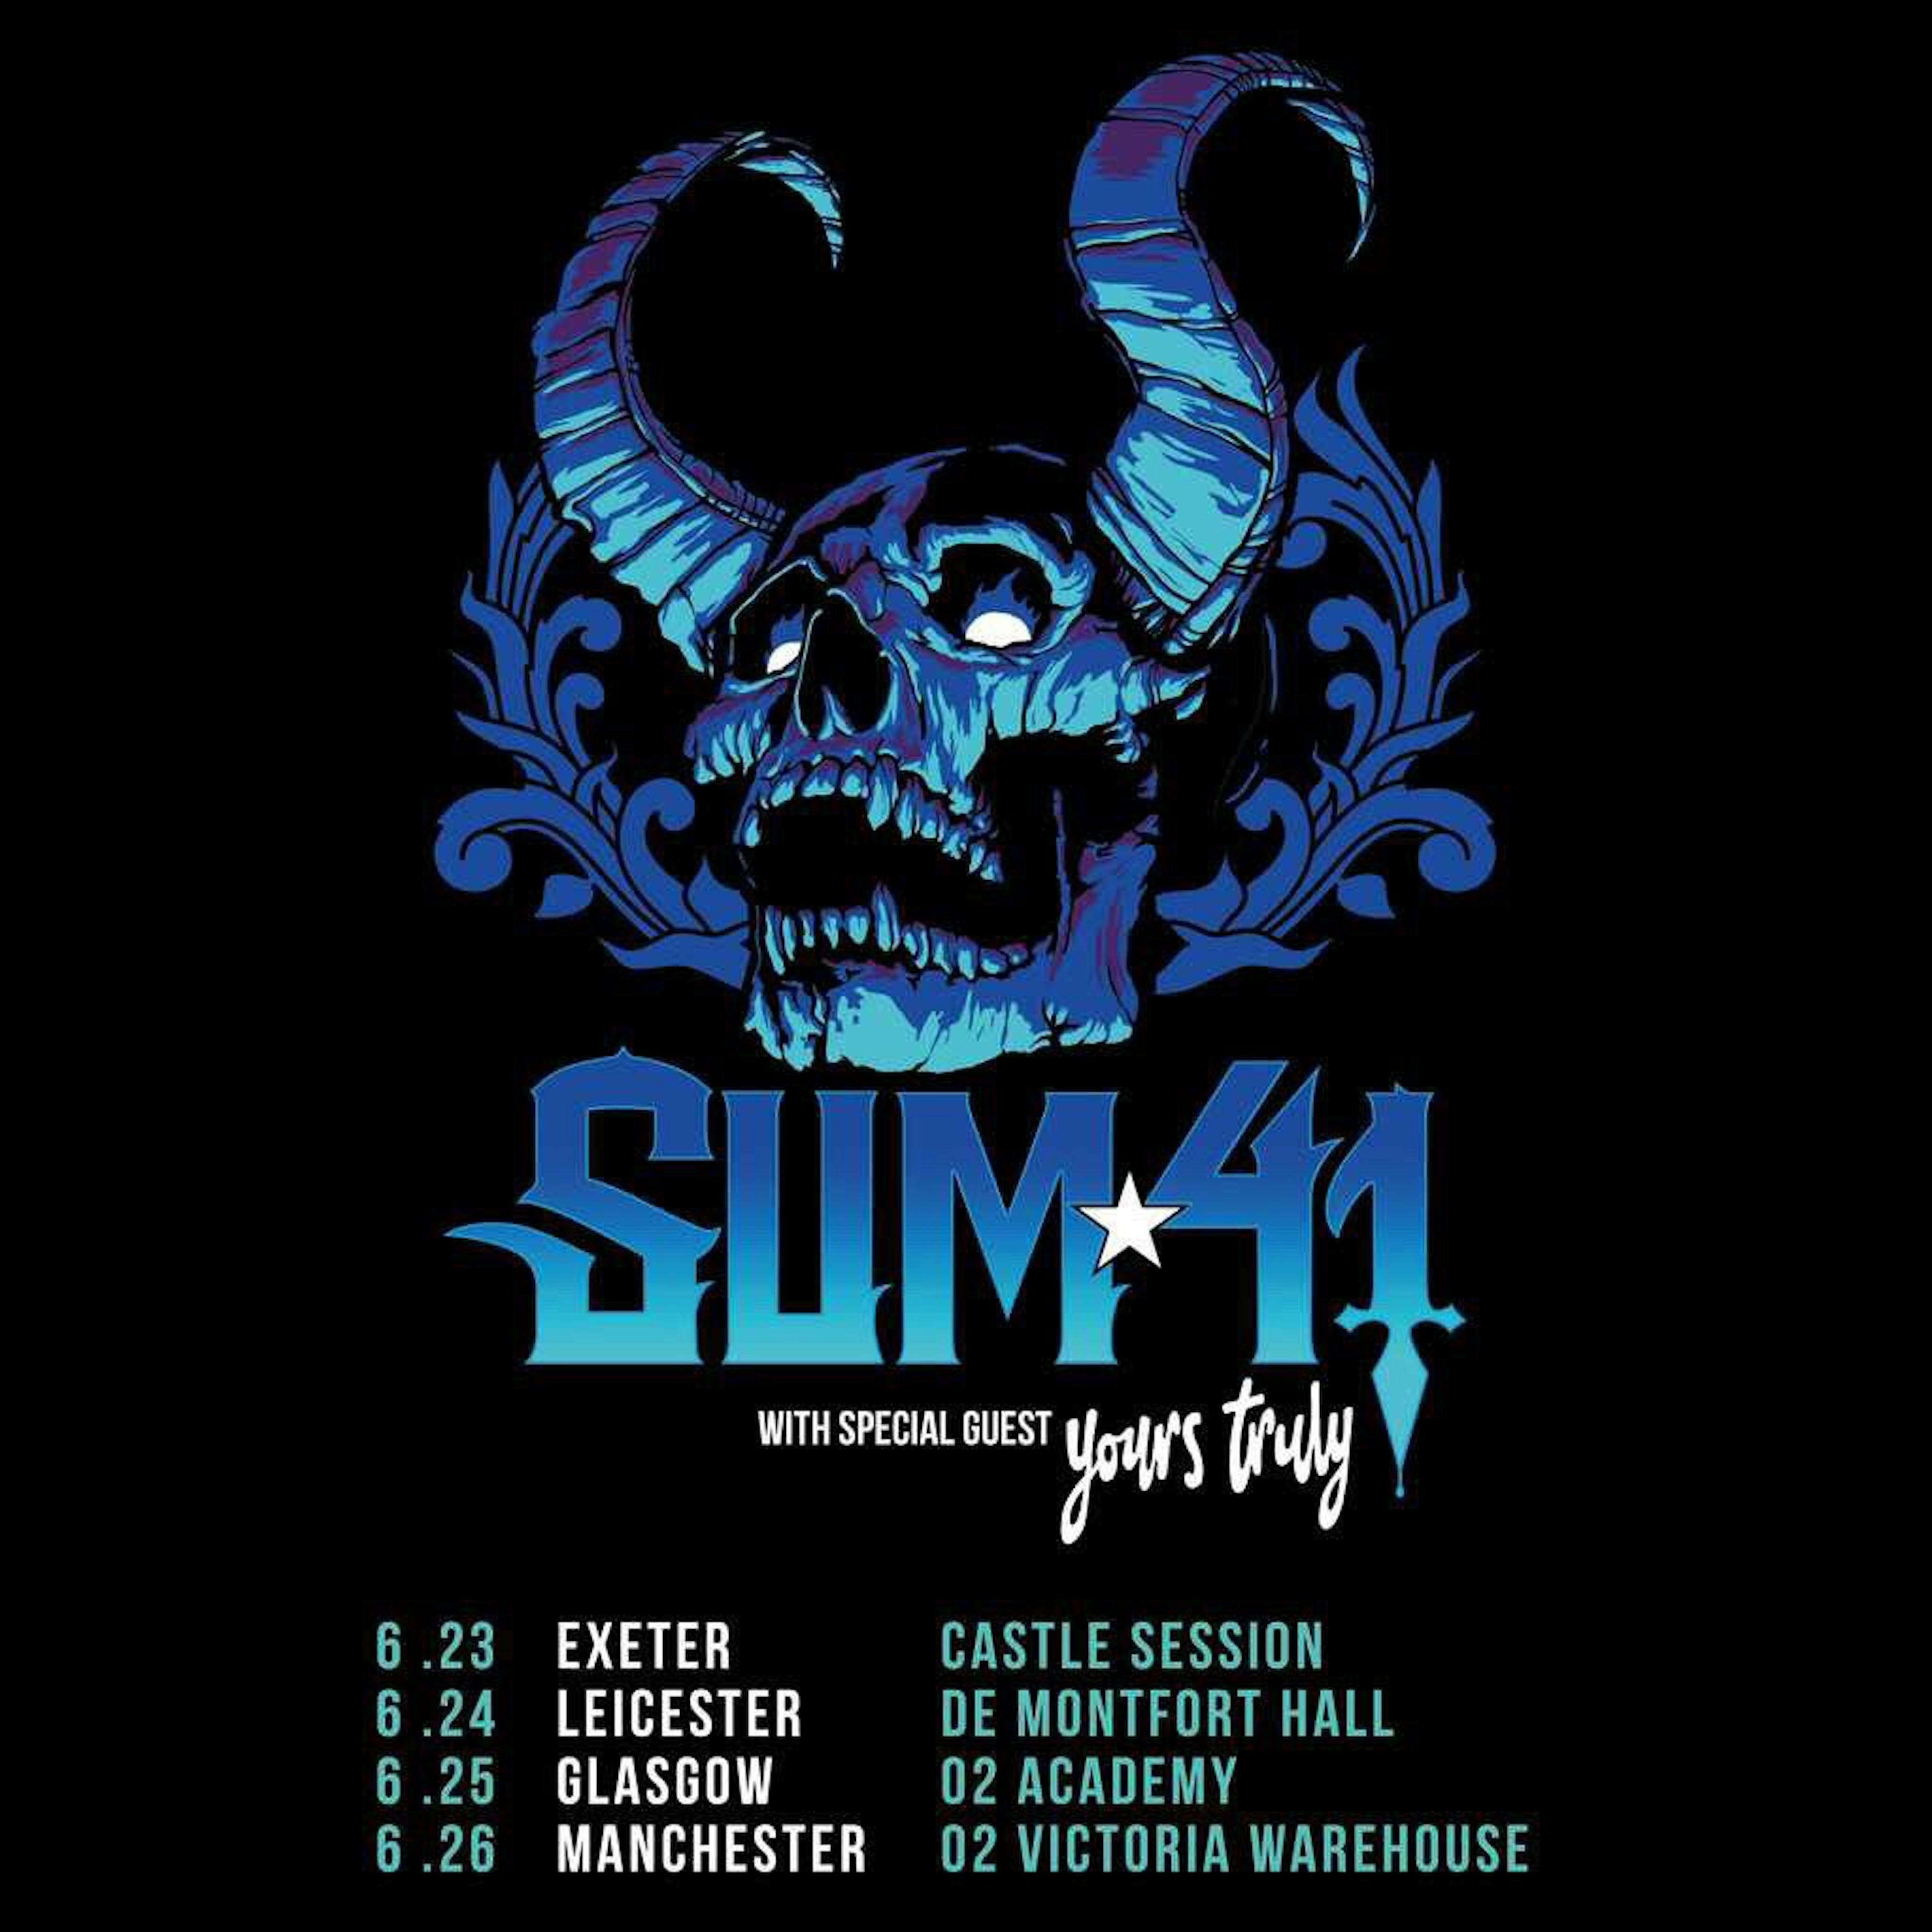 will sum 41 tour uk